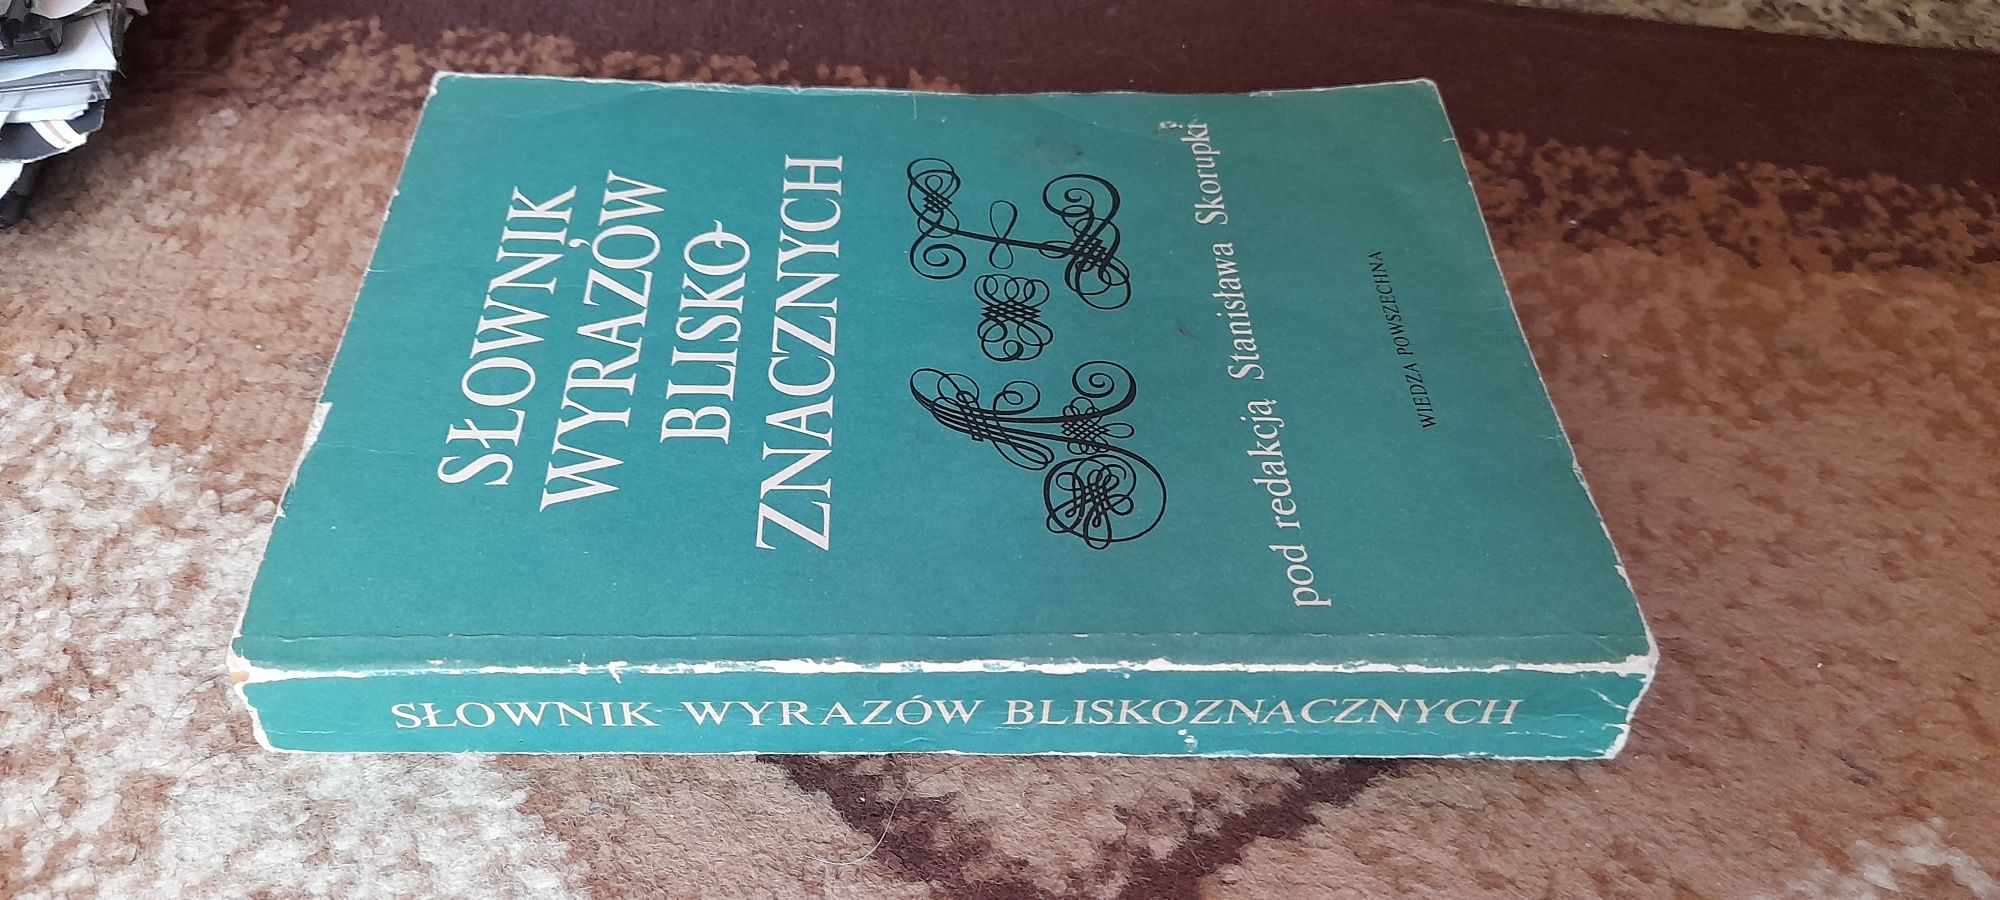 Słownik Wyrazów Blisko-znacznych - pod redakcją Stanisława Skorupki